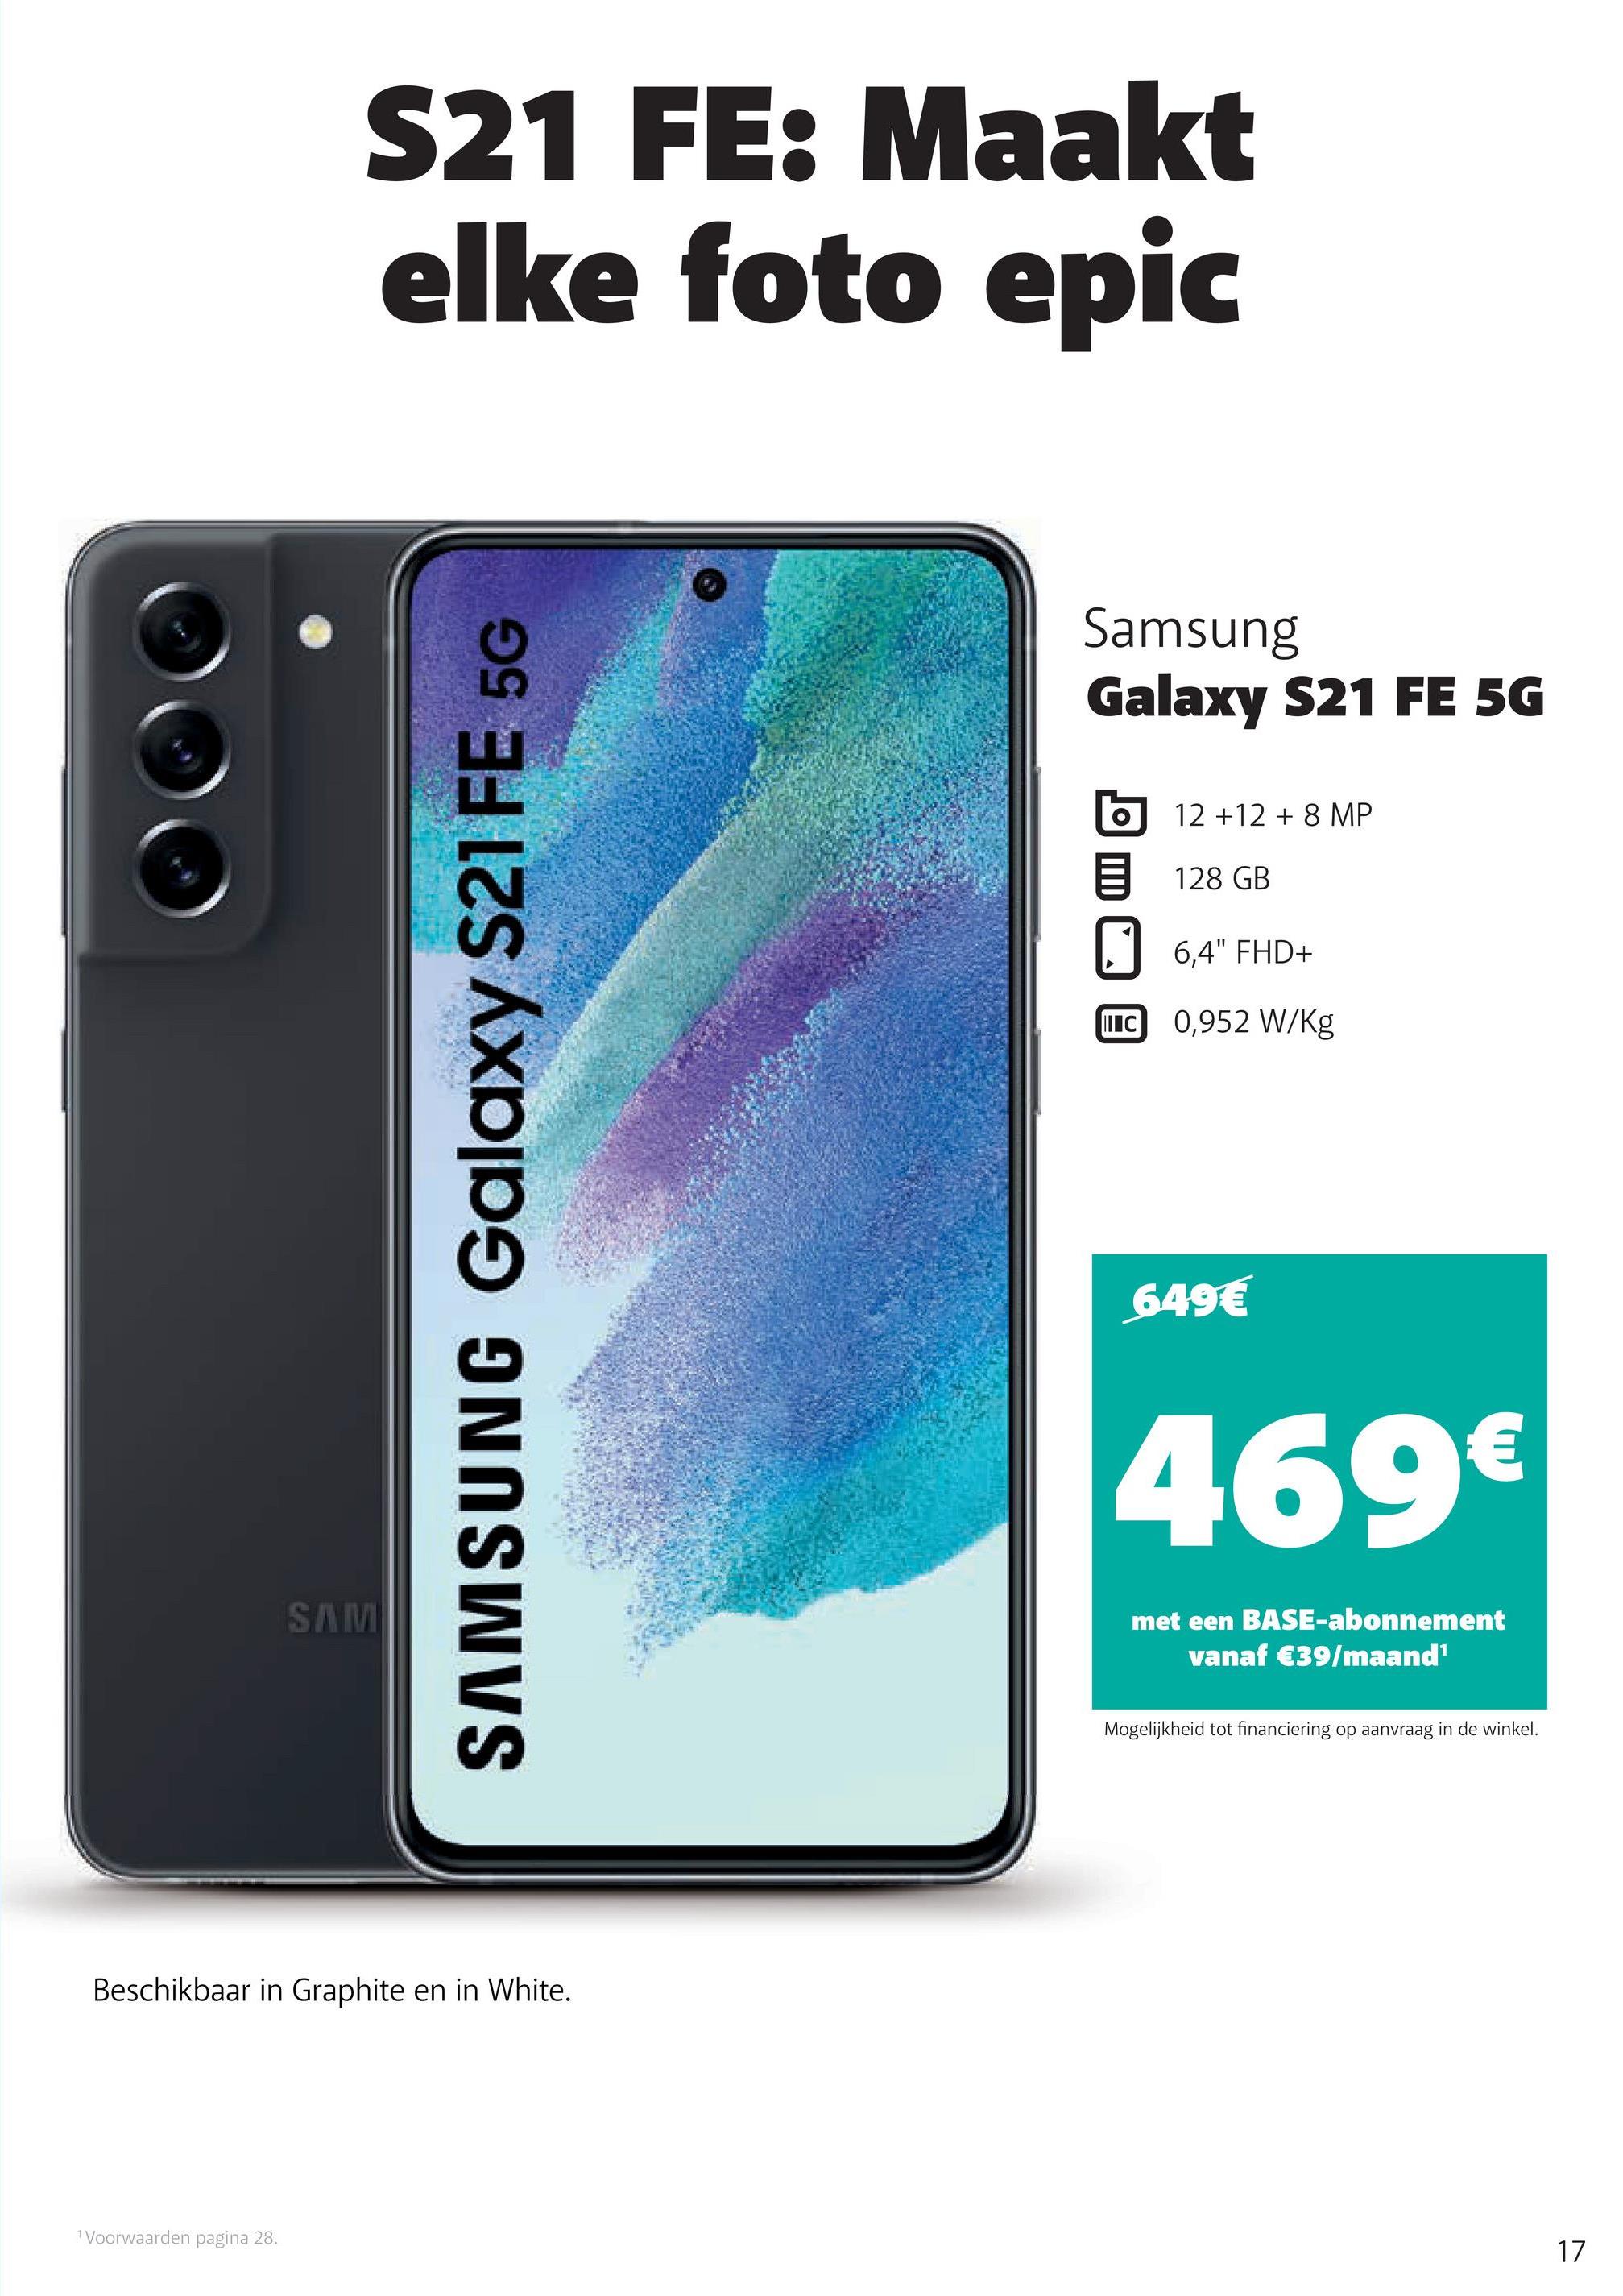 S21 FE: Maakt
elke foto epic
Samsung
Galaxy S21 FE 5G
12 +12 + 8 MP
128 GB
6,4" FHD+
LIC 0,952 W/kg
SAMSUNG Galaxy S21 FE 5G
649€
€
469€
SAMI
met een BASE-abonnement
vanaf €39/maand
Mogelijkheid tot financiering op aanvraag in de winkel.
Beschikbaar in Graphite en in White.
1 Voorwaarden pagina 28.
17
